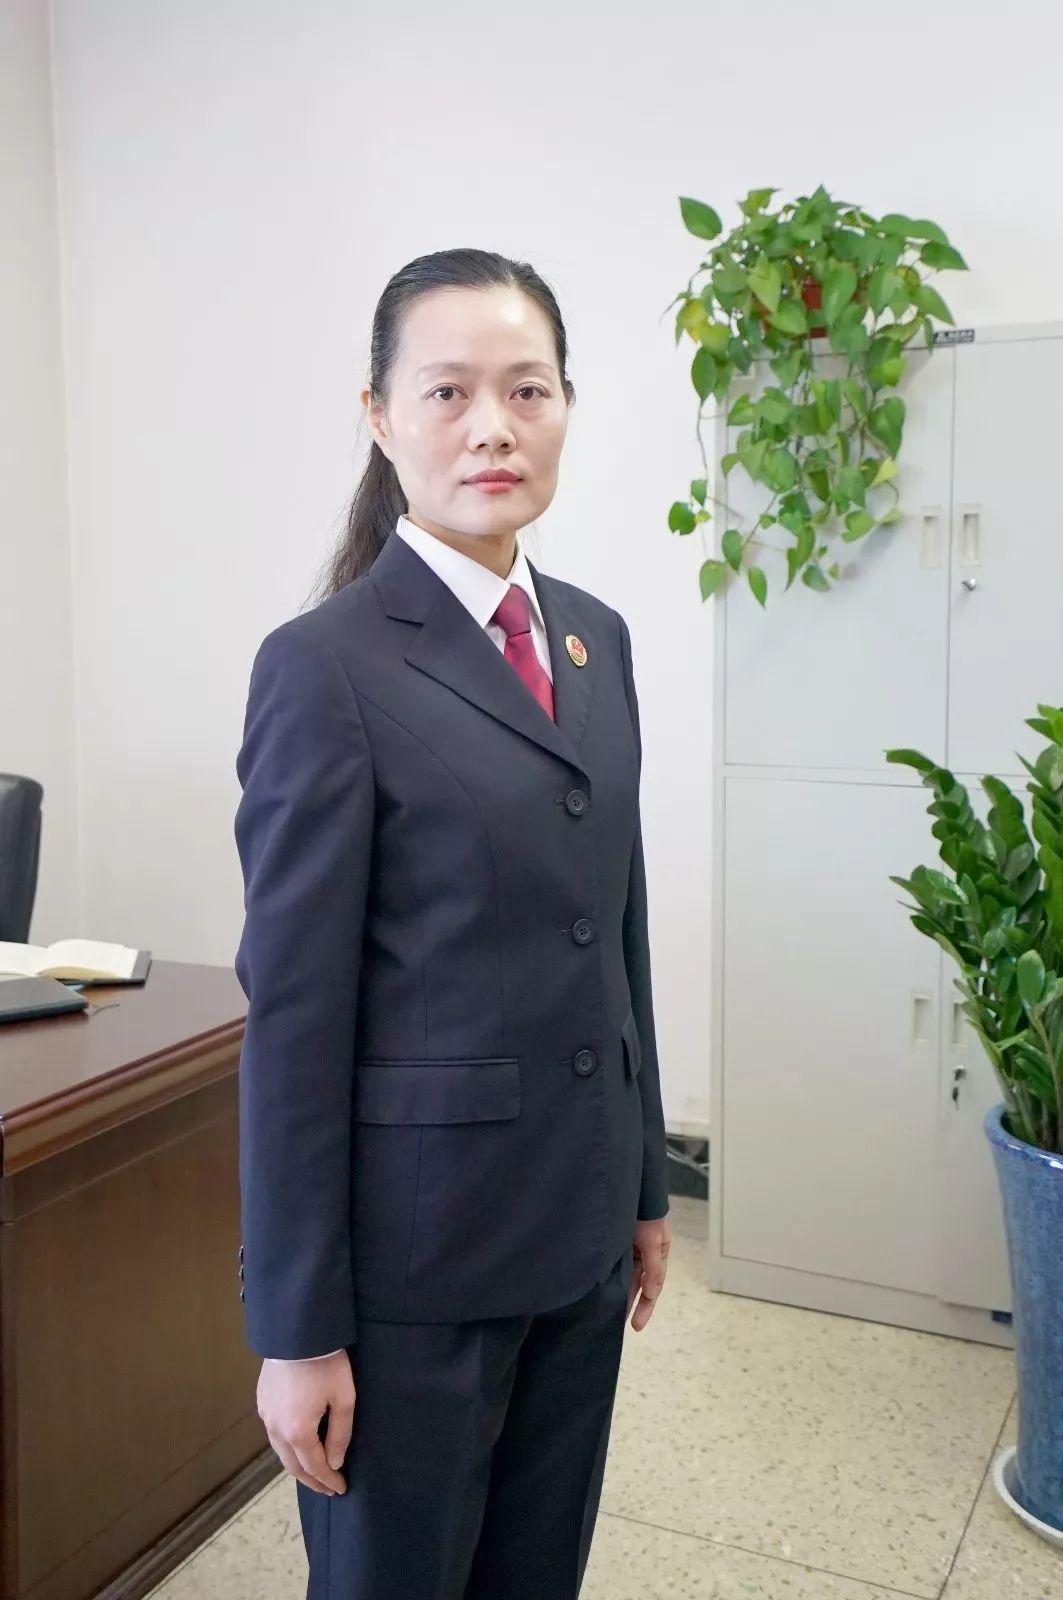 中国女检察官照片图片